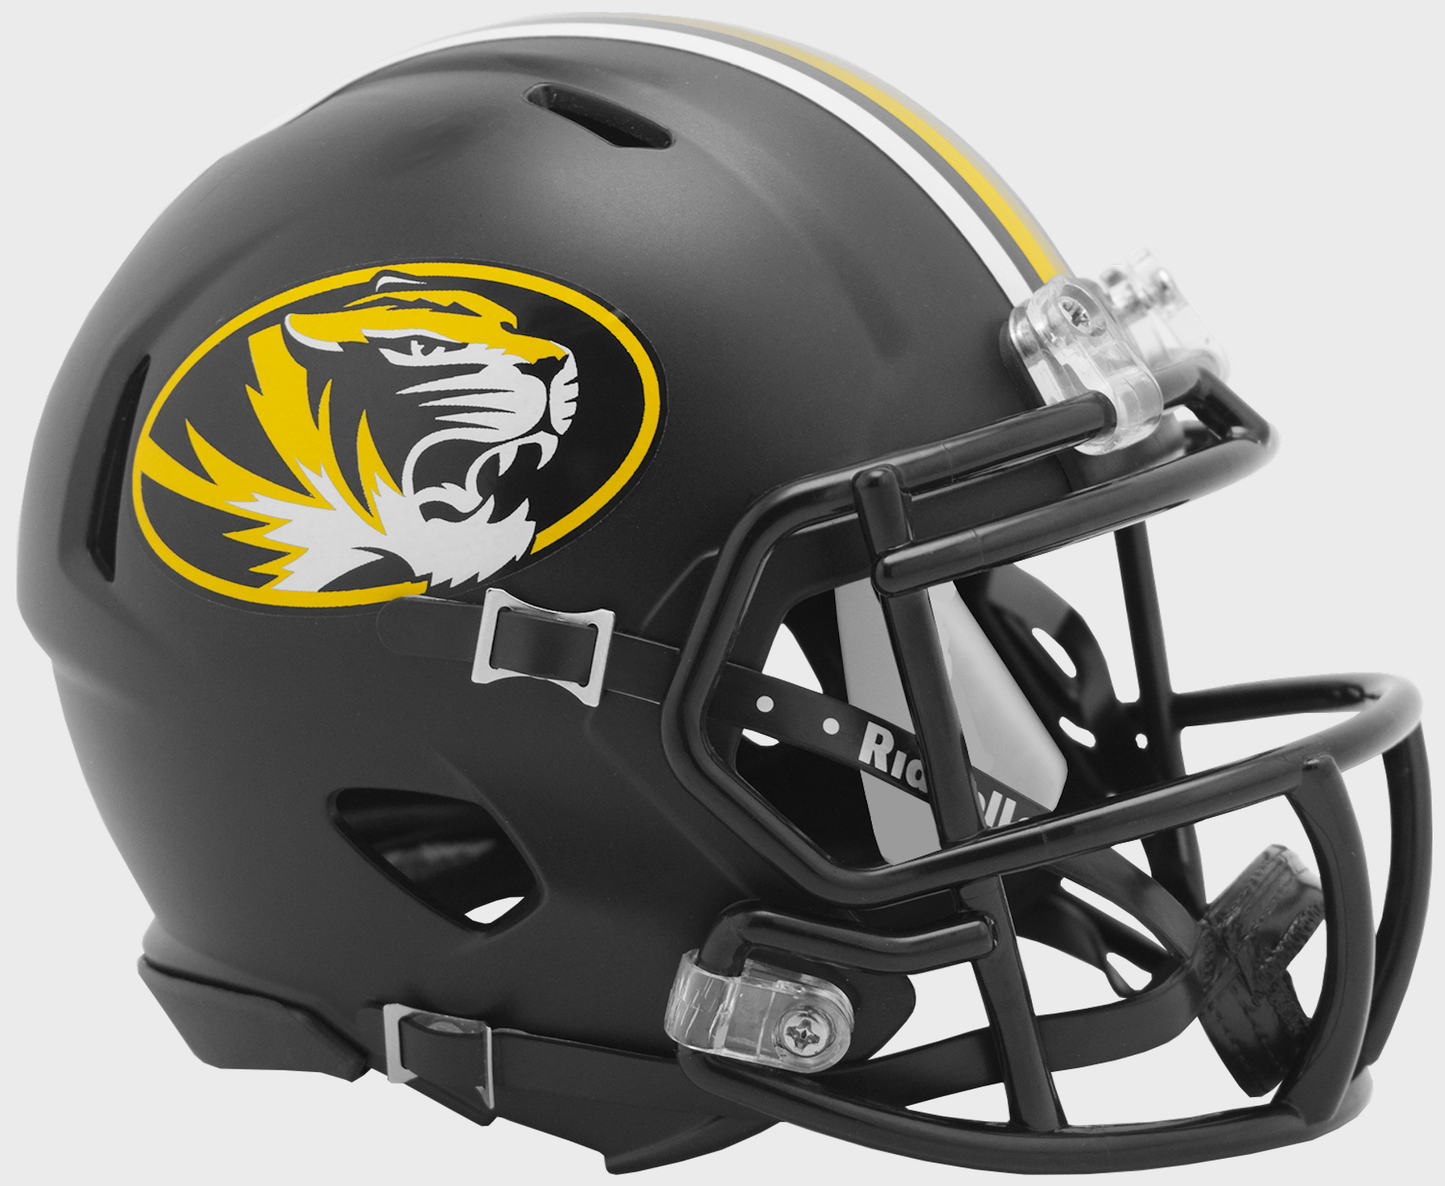 Missouri Tigers mini helmet